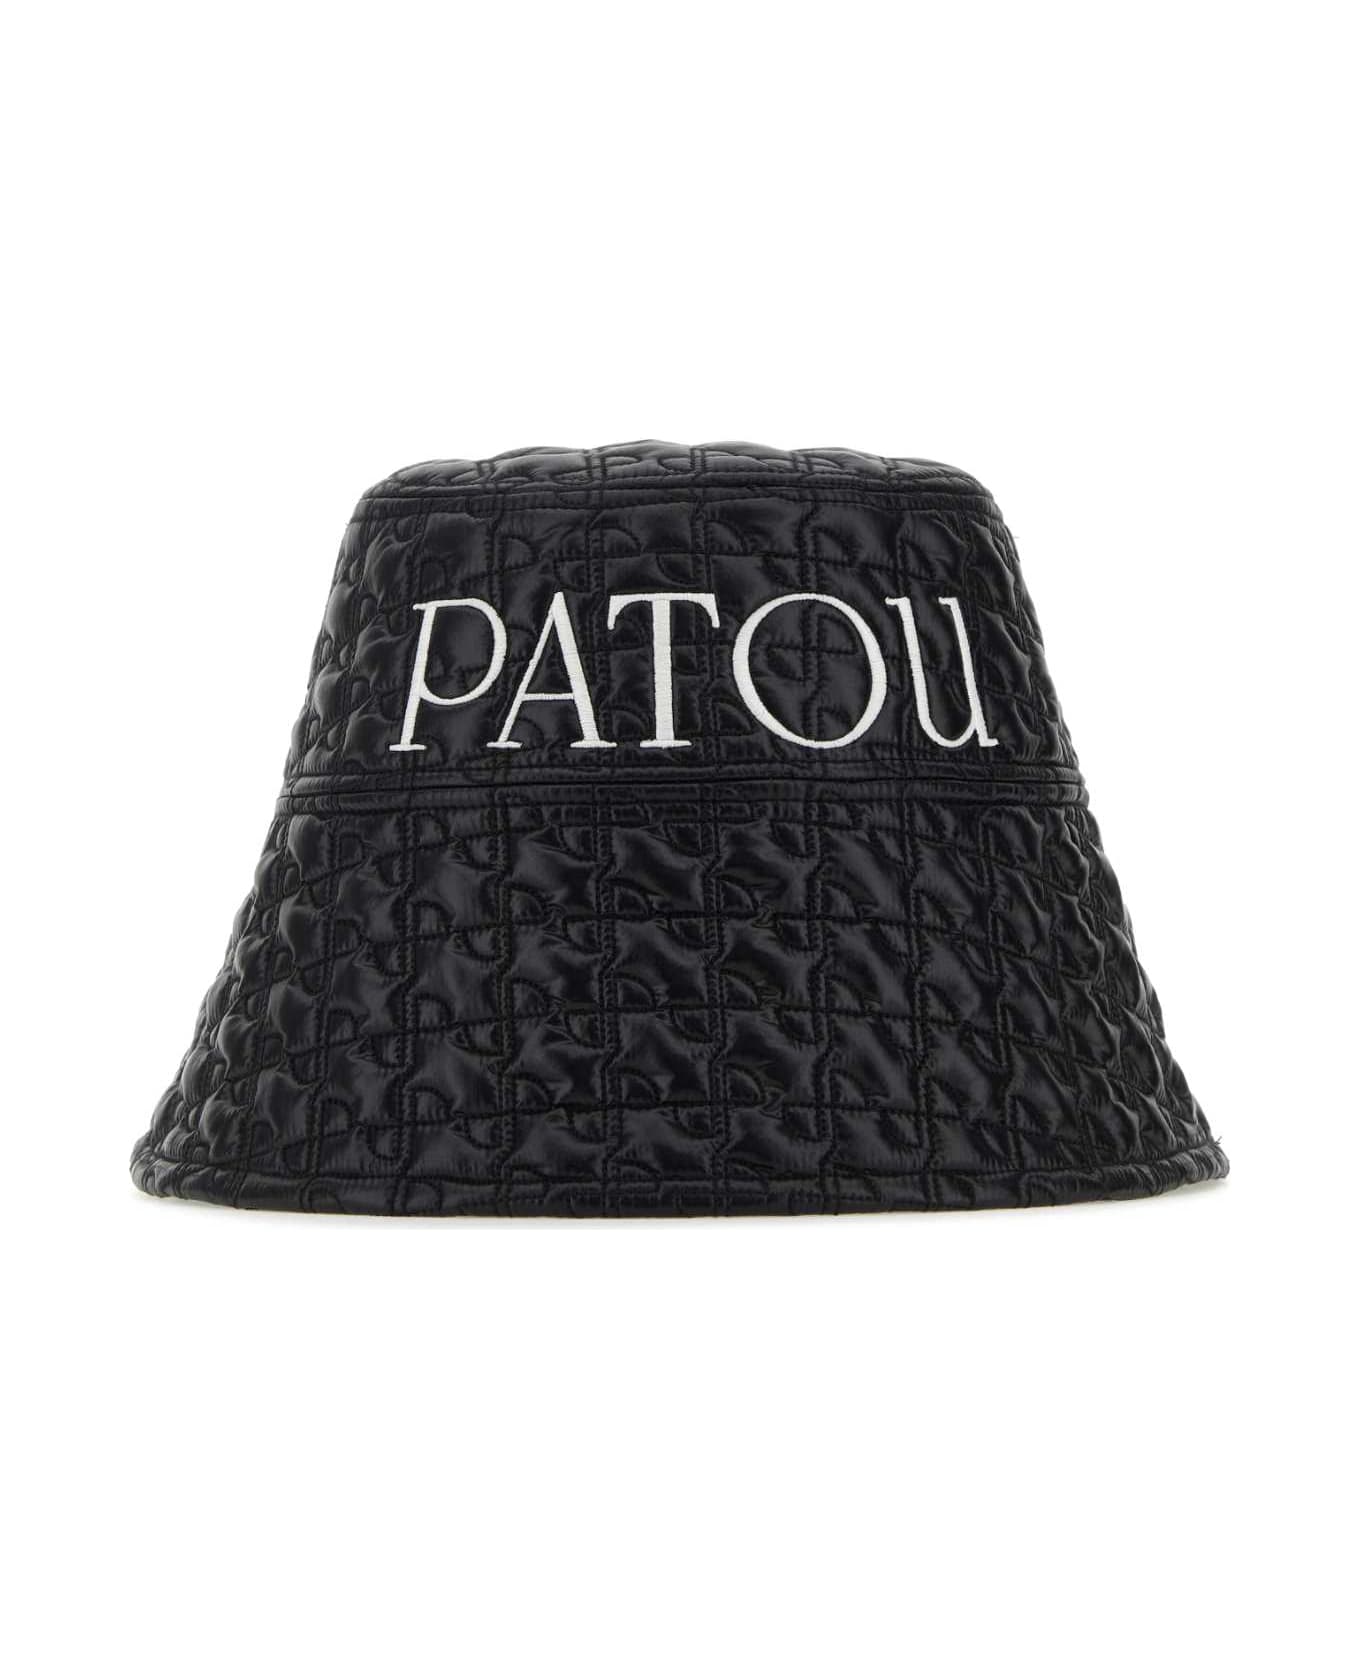 Patou Black Nylon Bucket Hat - BLACK 帽子